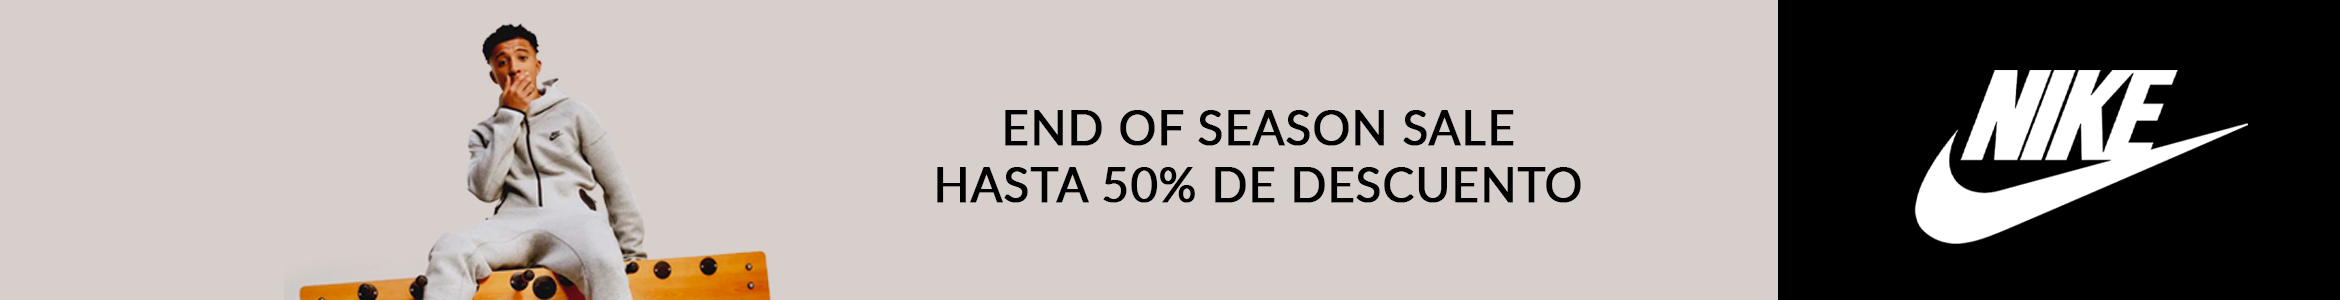 END OF SEASON SALE HASTA 50% DE DESCUENTO